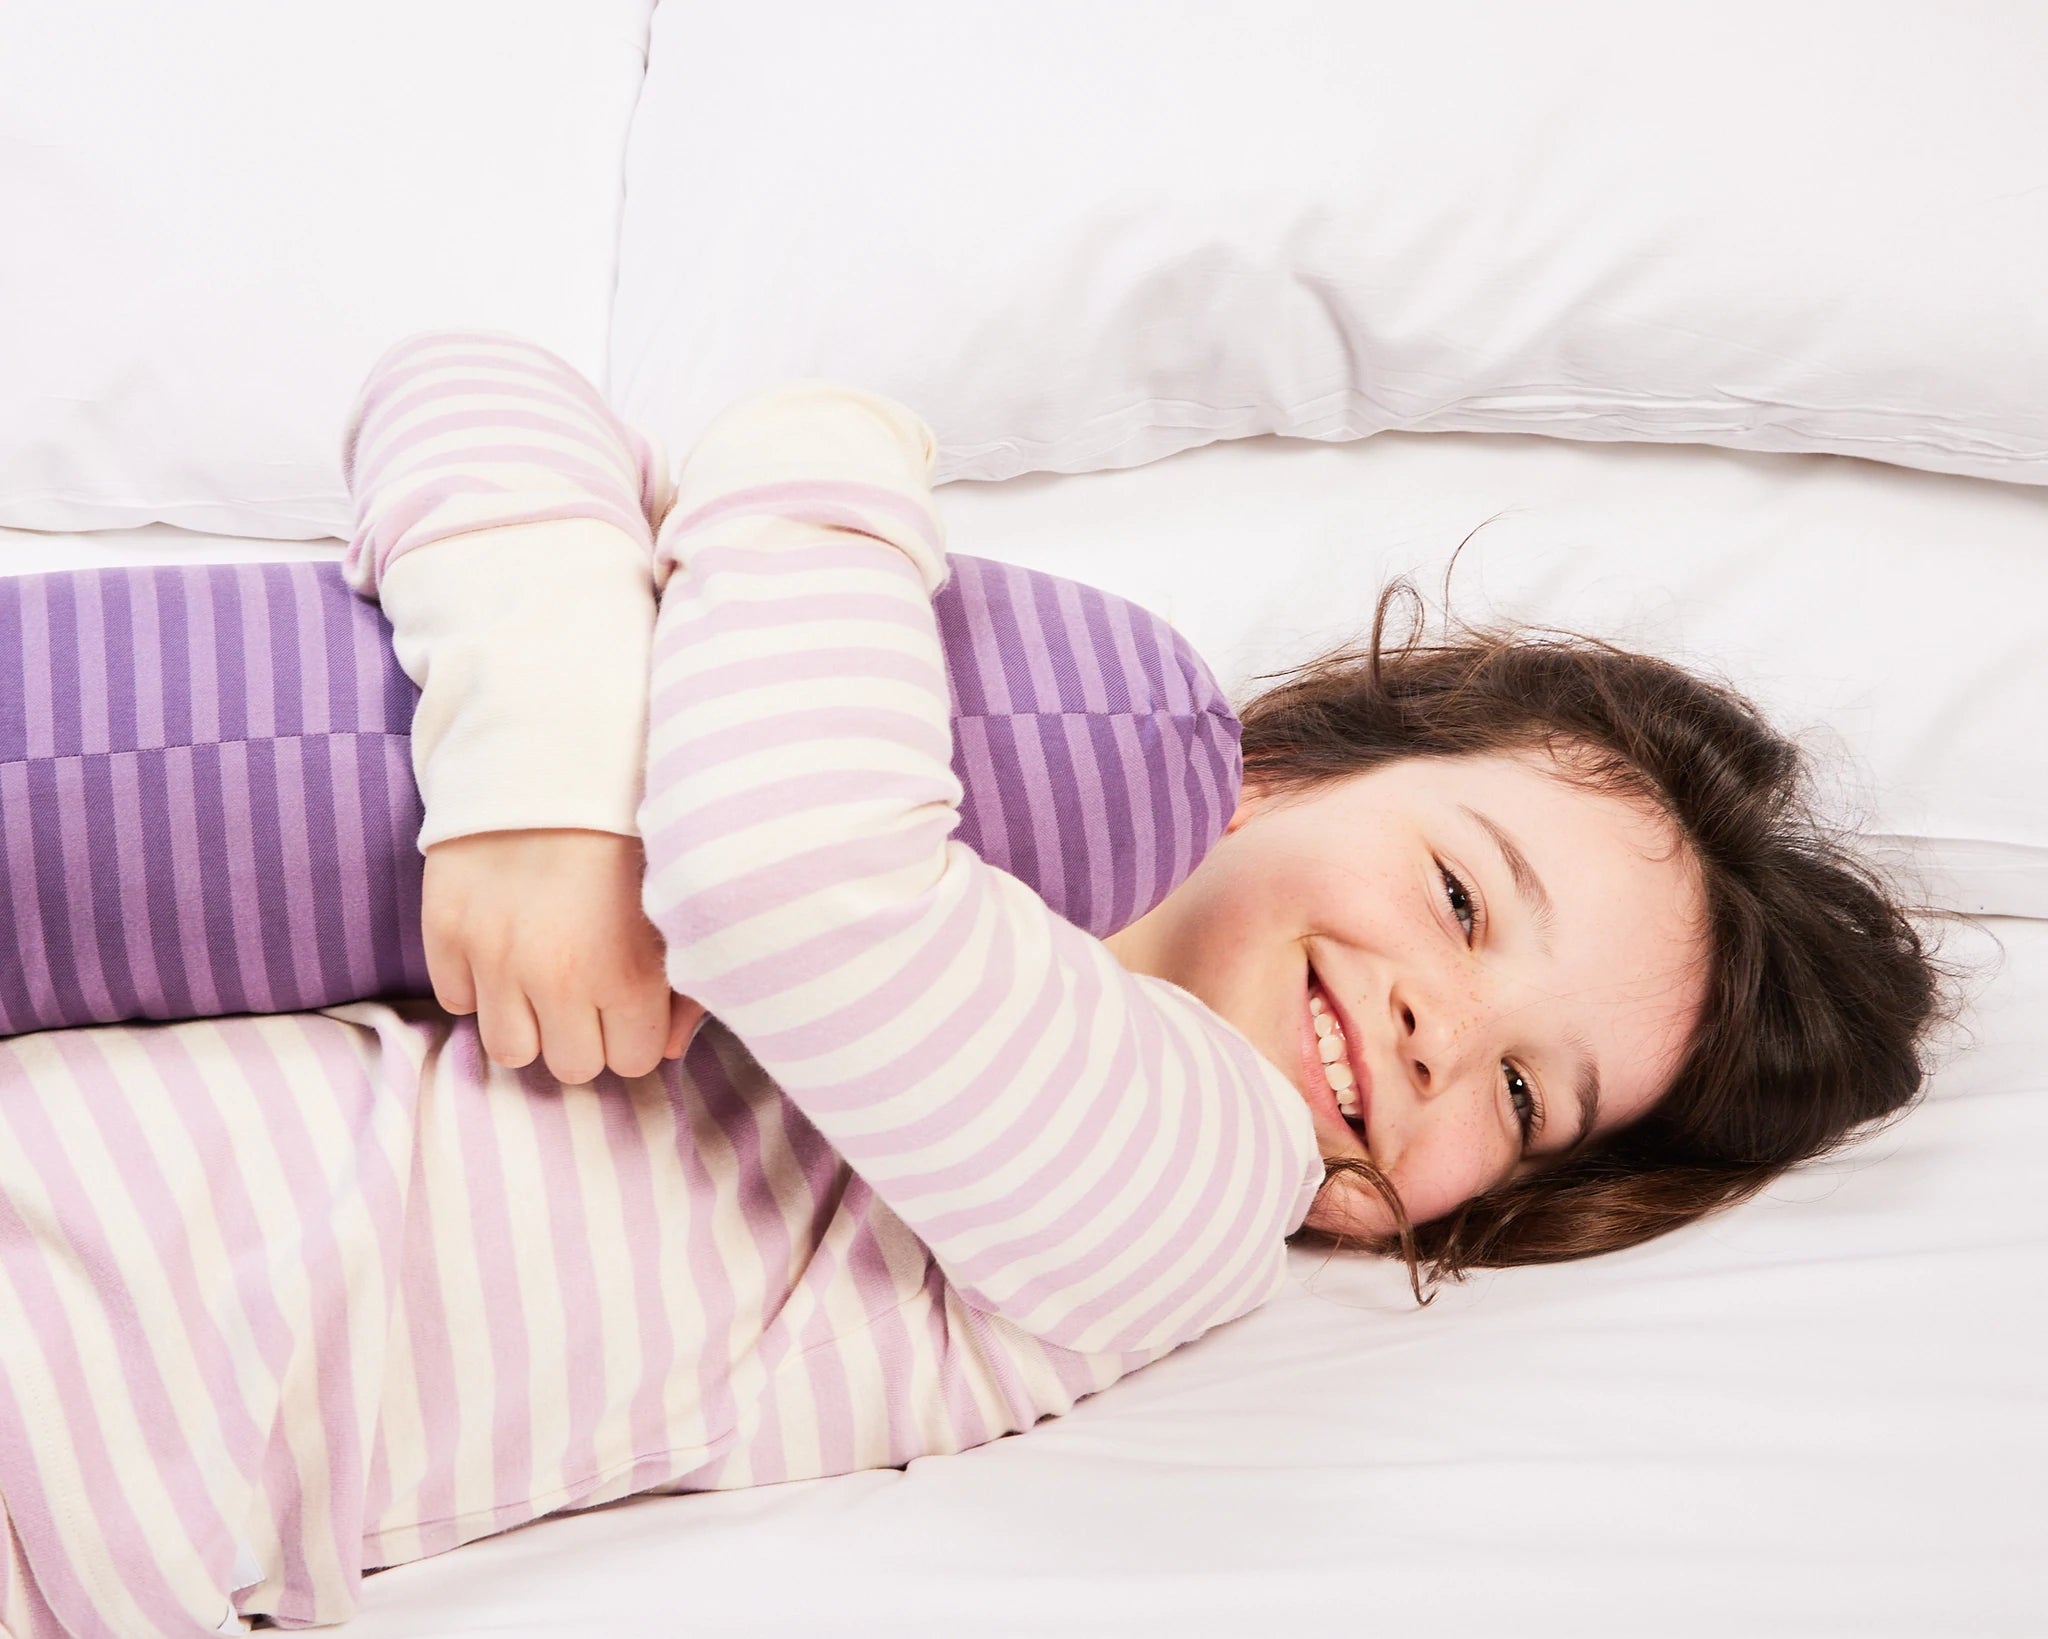 Young girl enjoys sleeping with her purple short sleeper